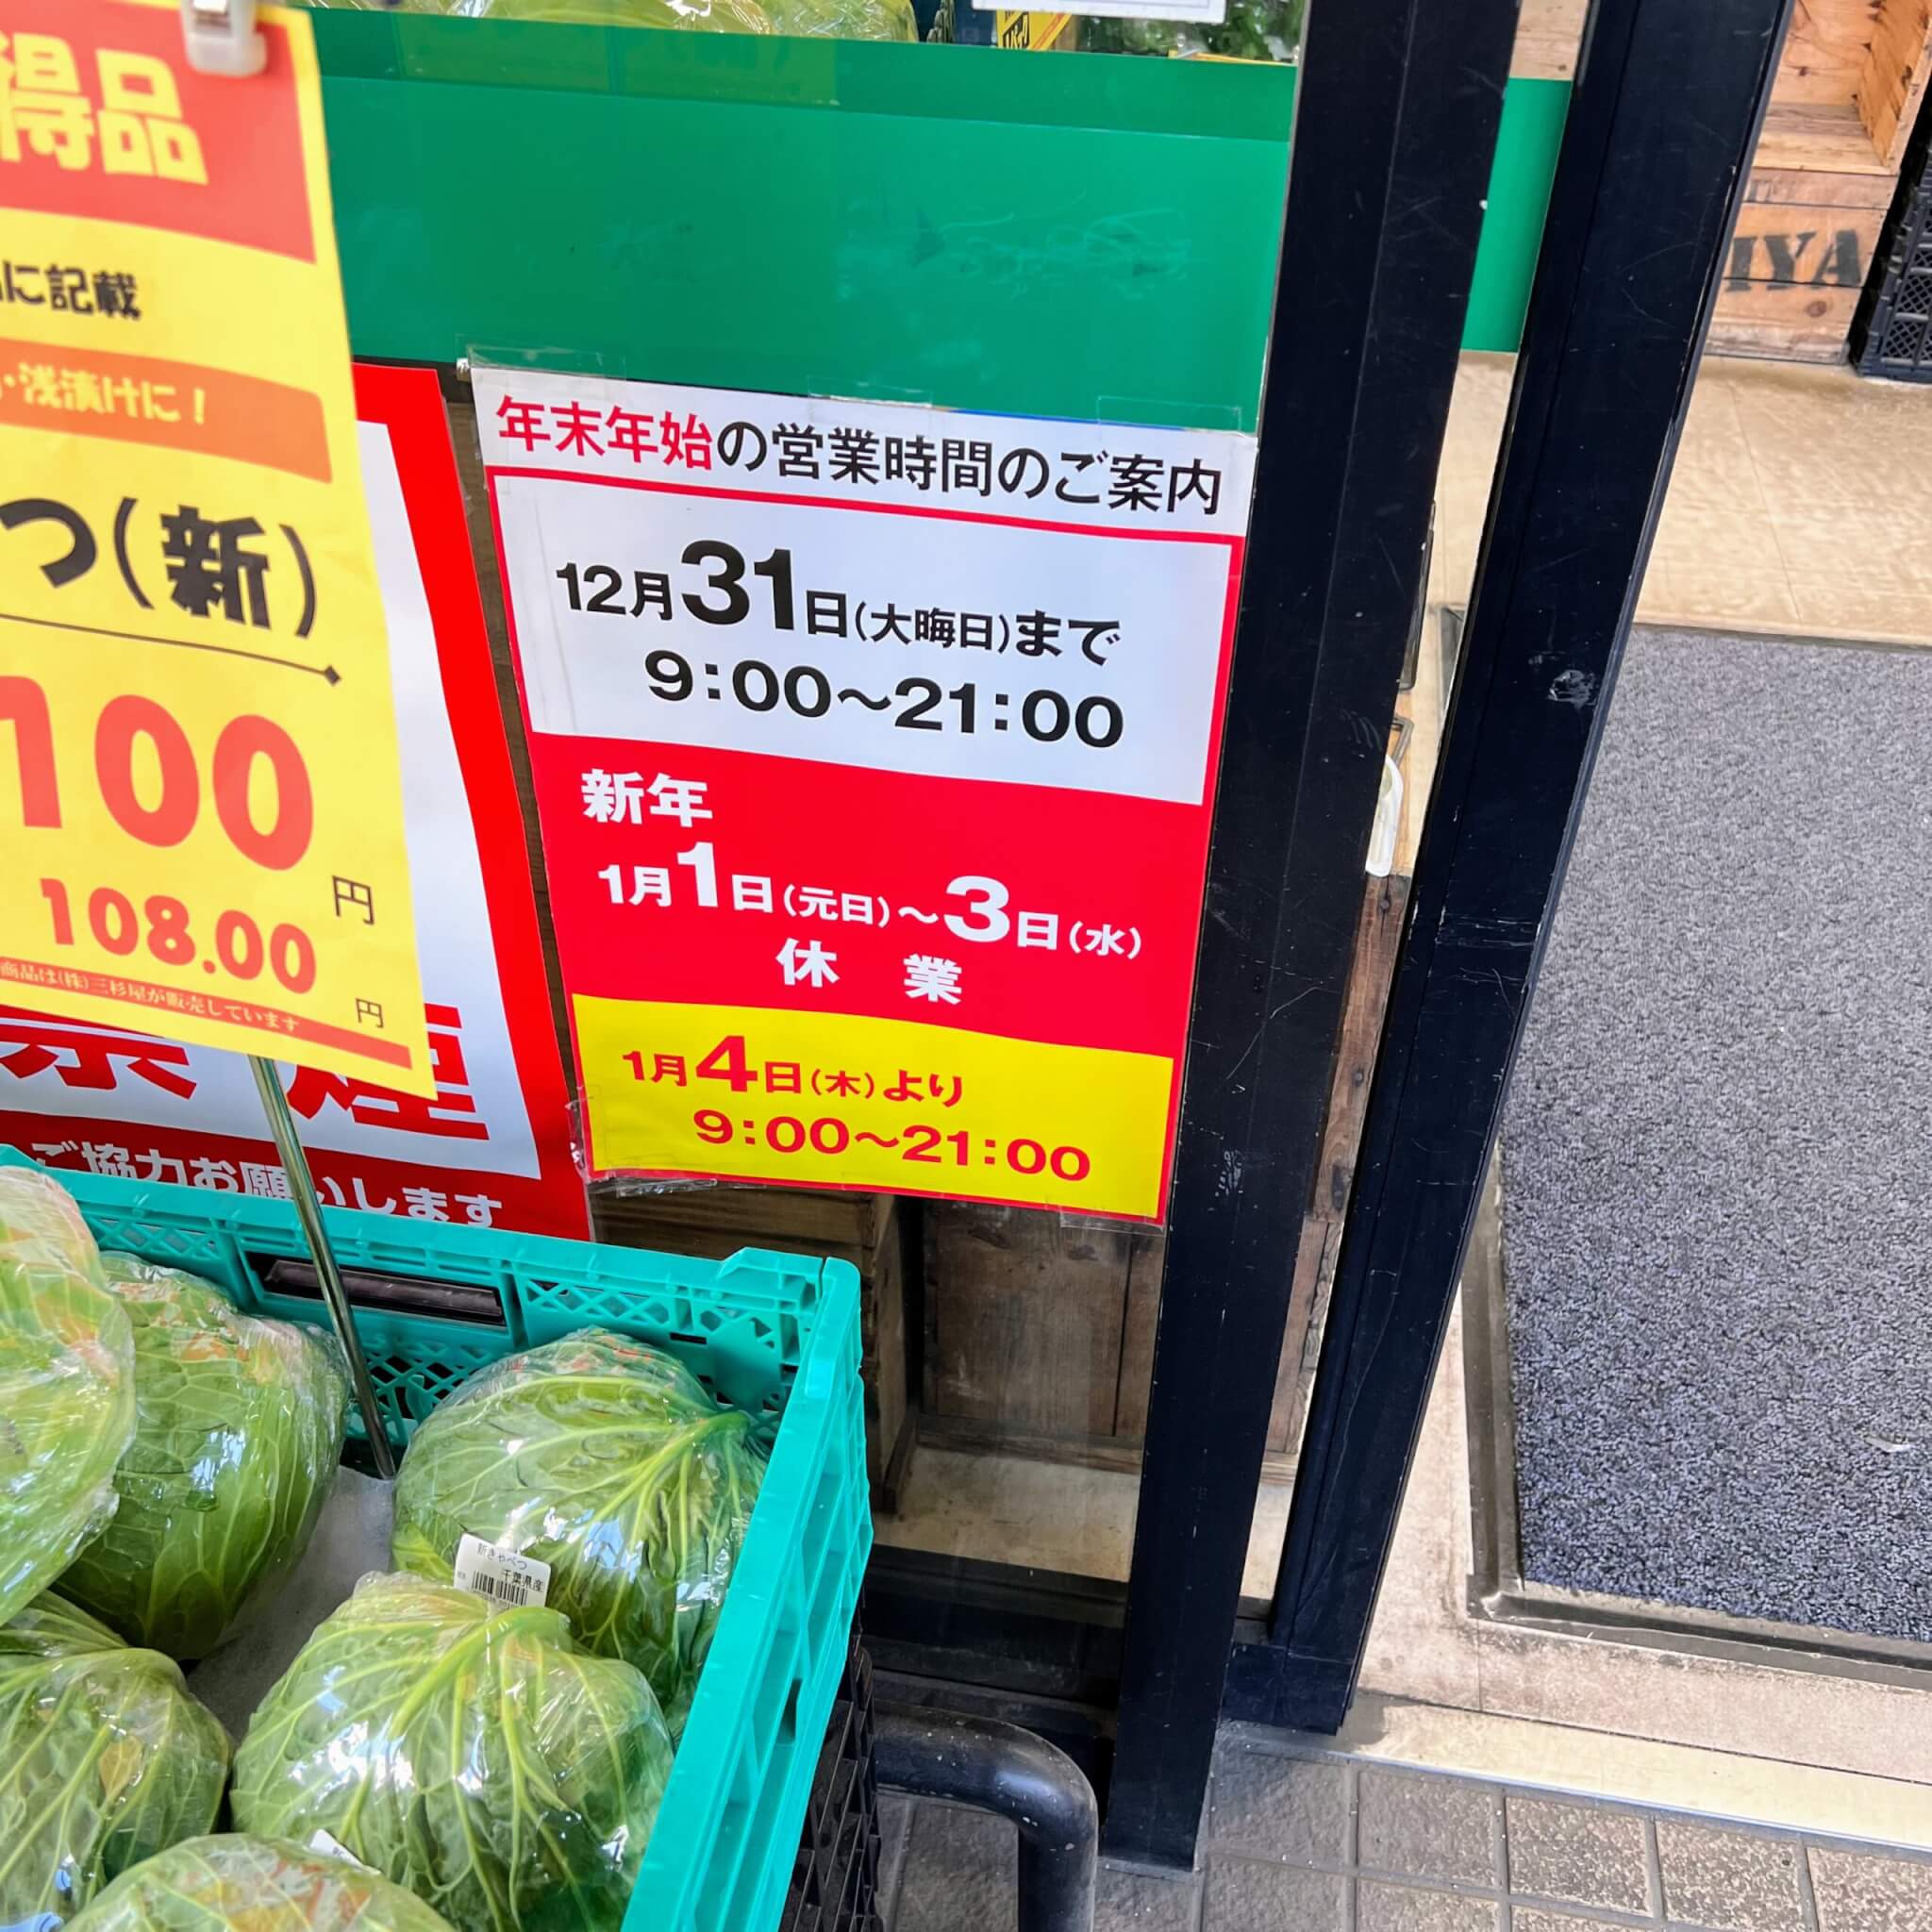 業務スーパー東加古川店の年末年始の営業時間の案内